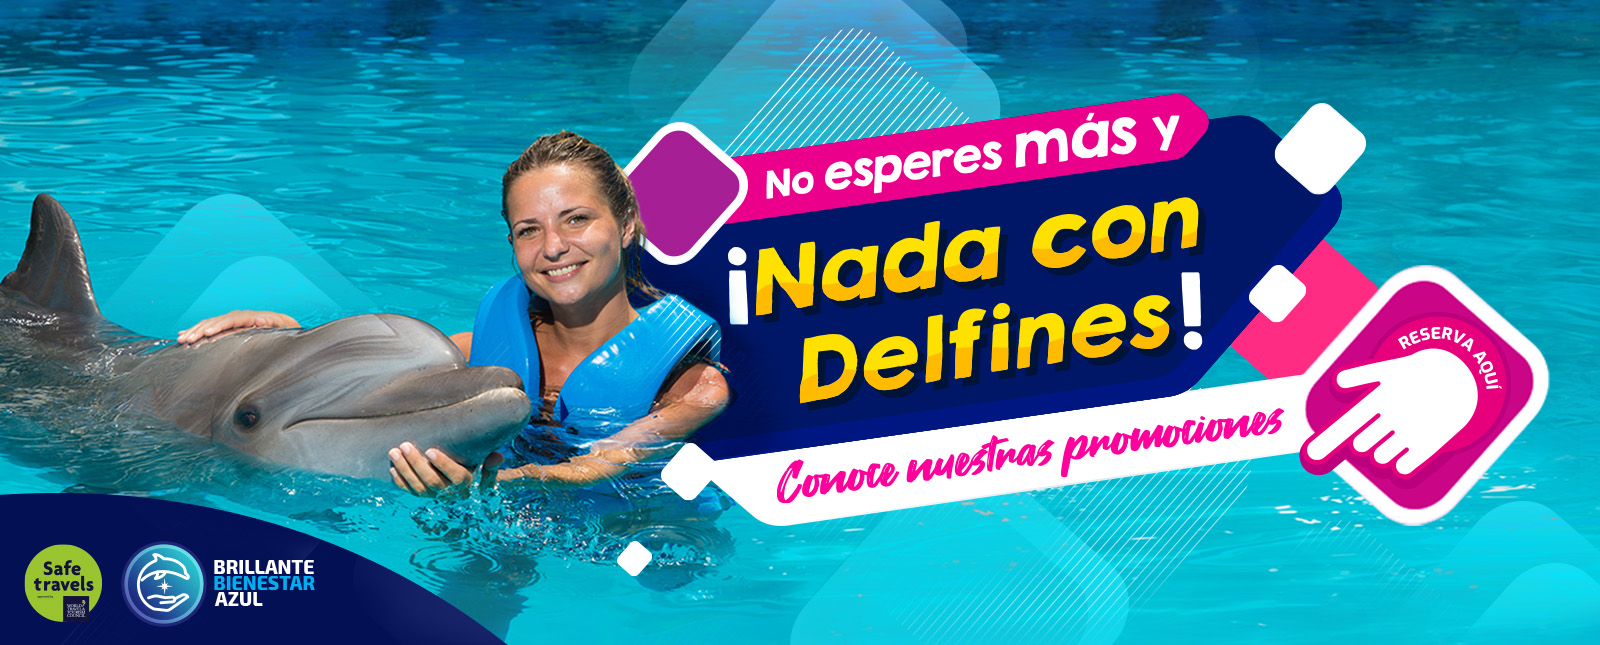 Nado con delfines Cancun y Riviera Maya